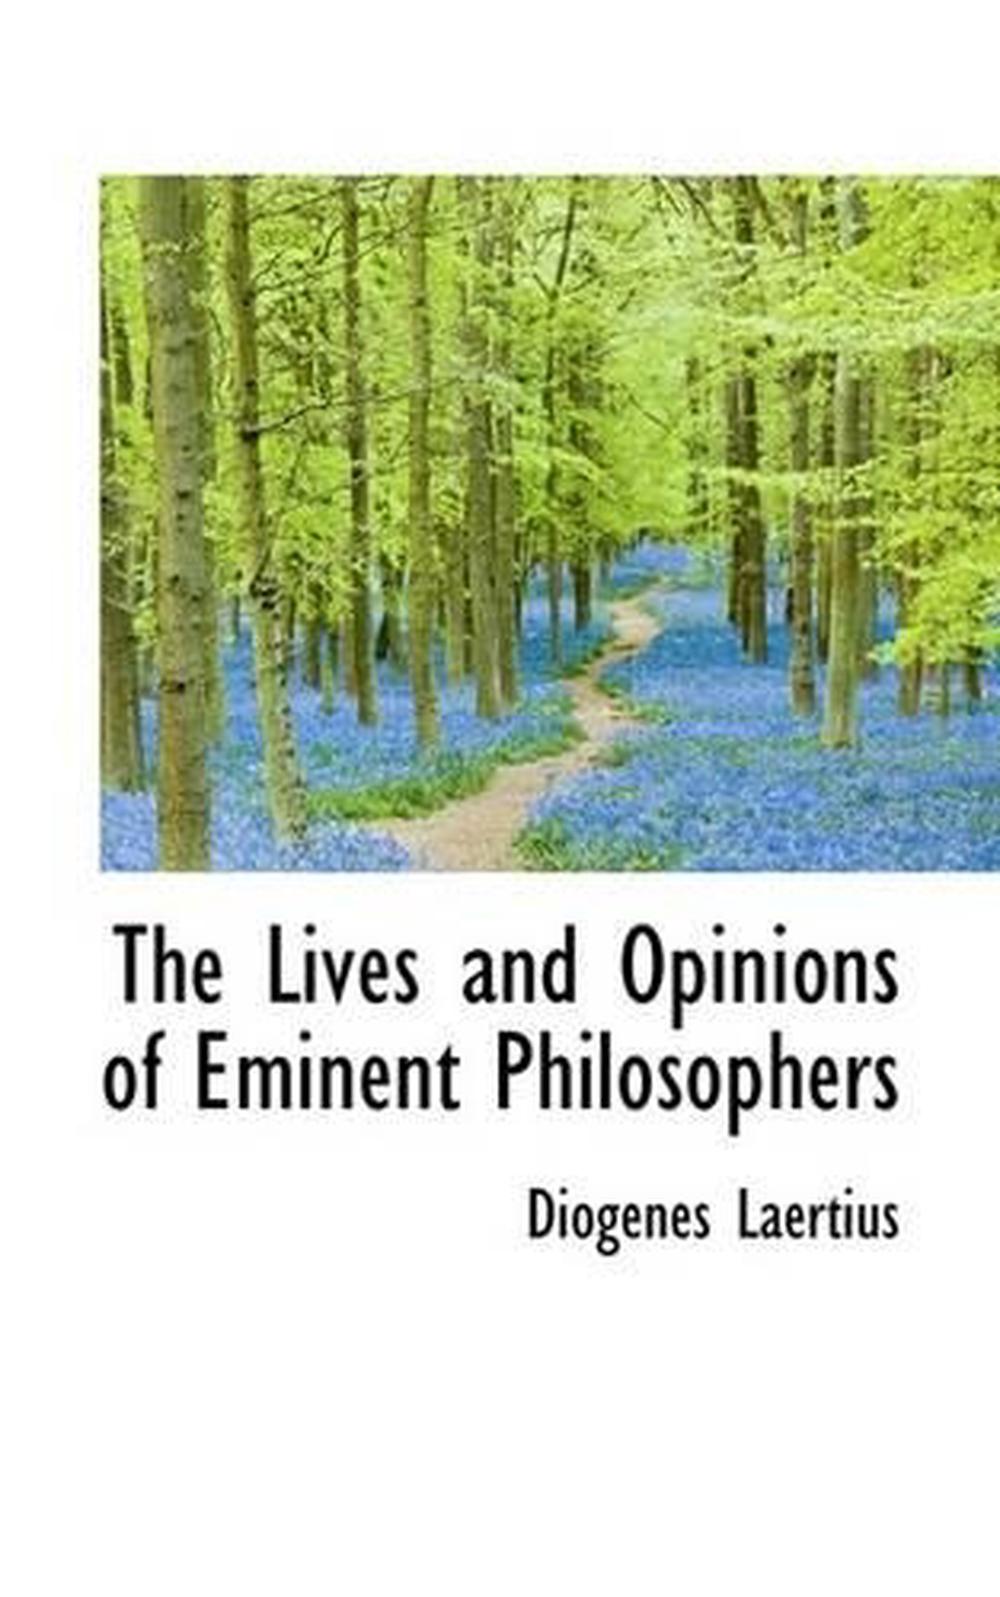 diogenes laertius lives of eminent philosophers socrates